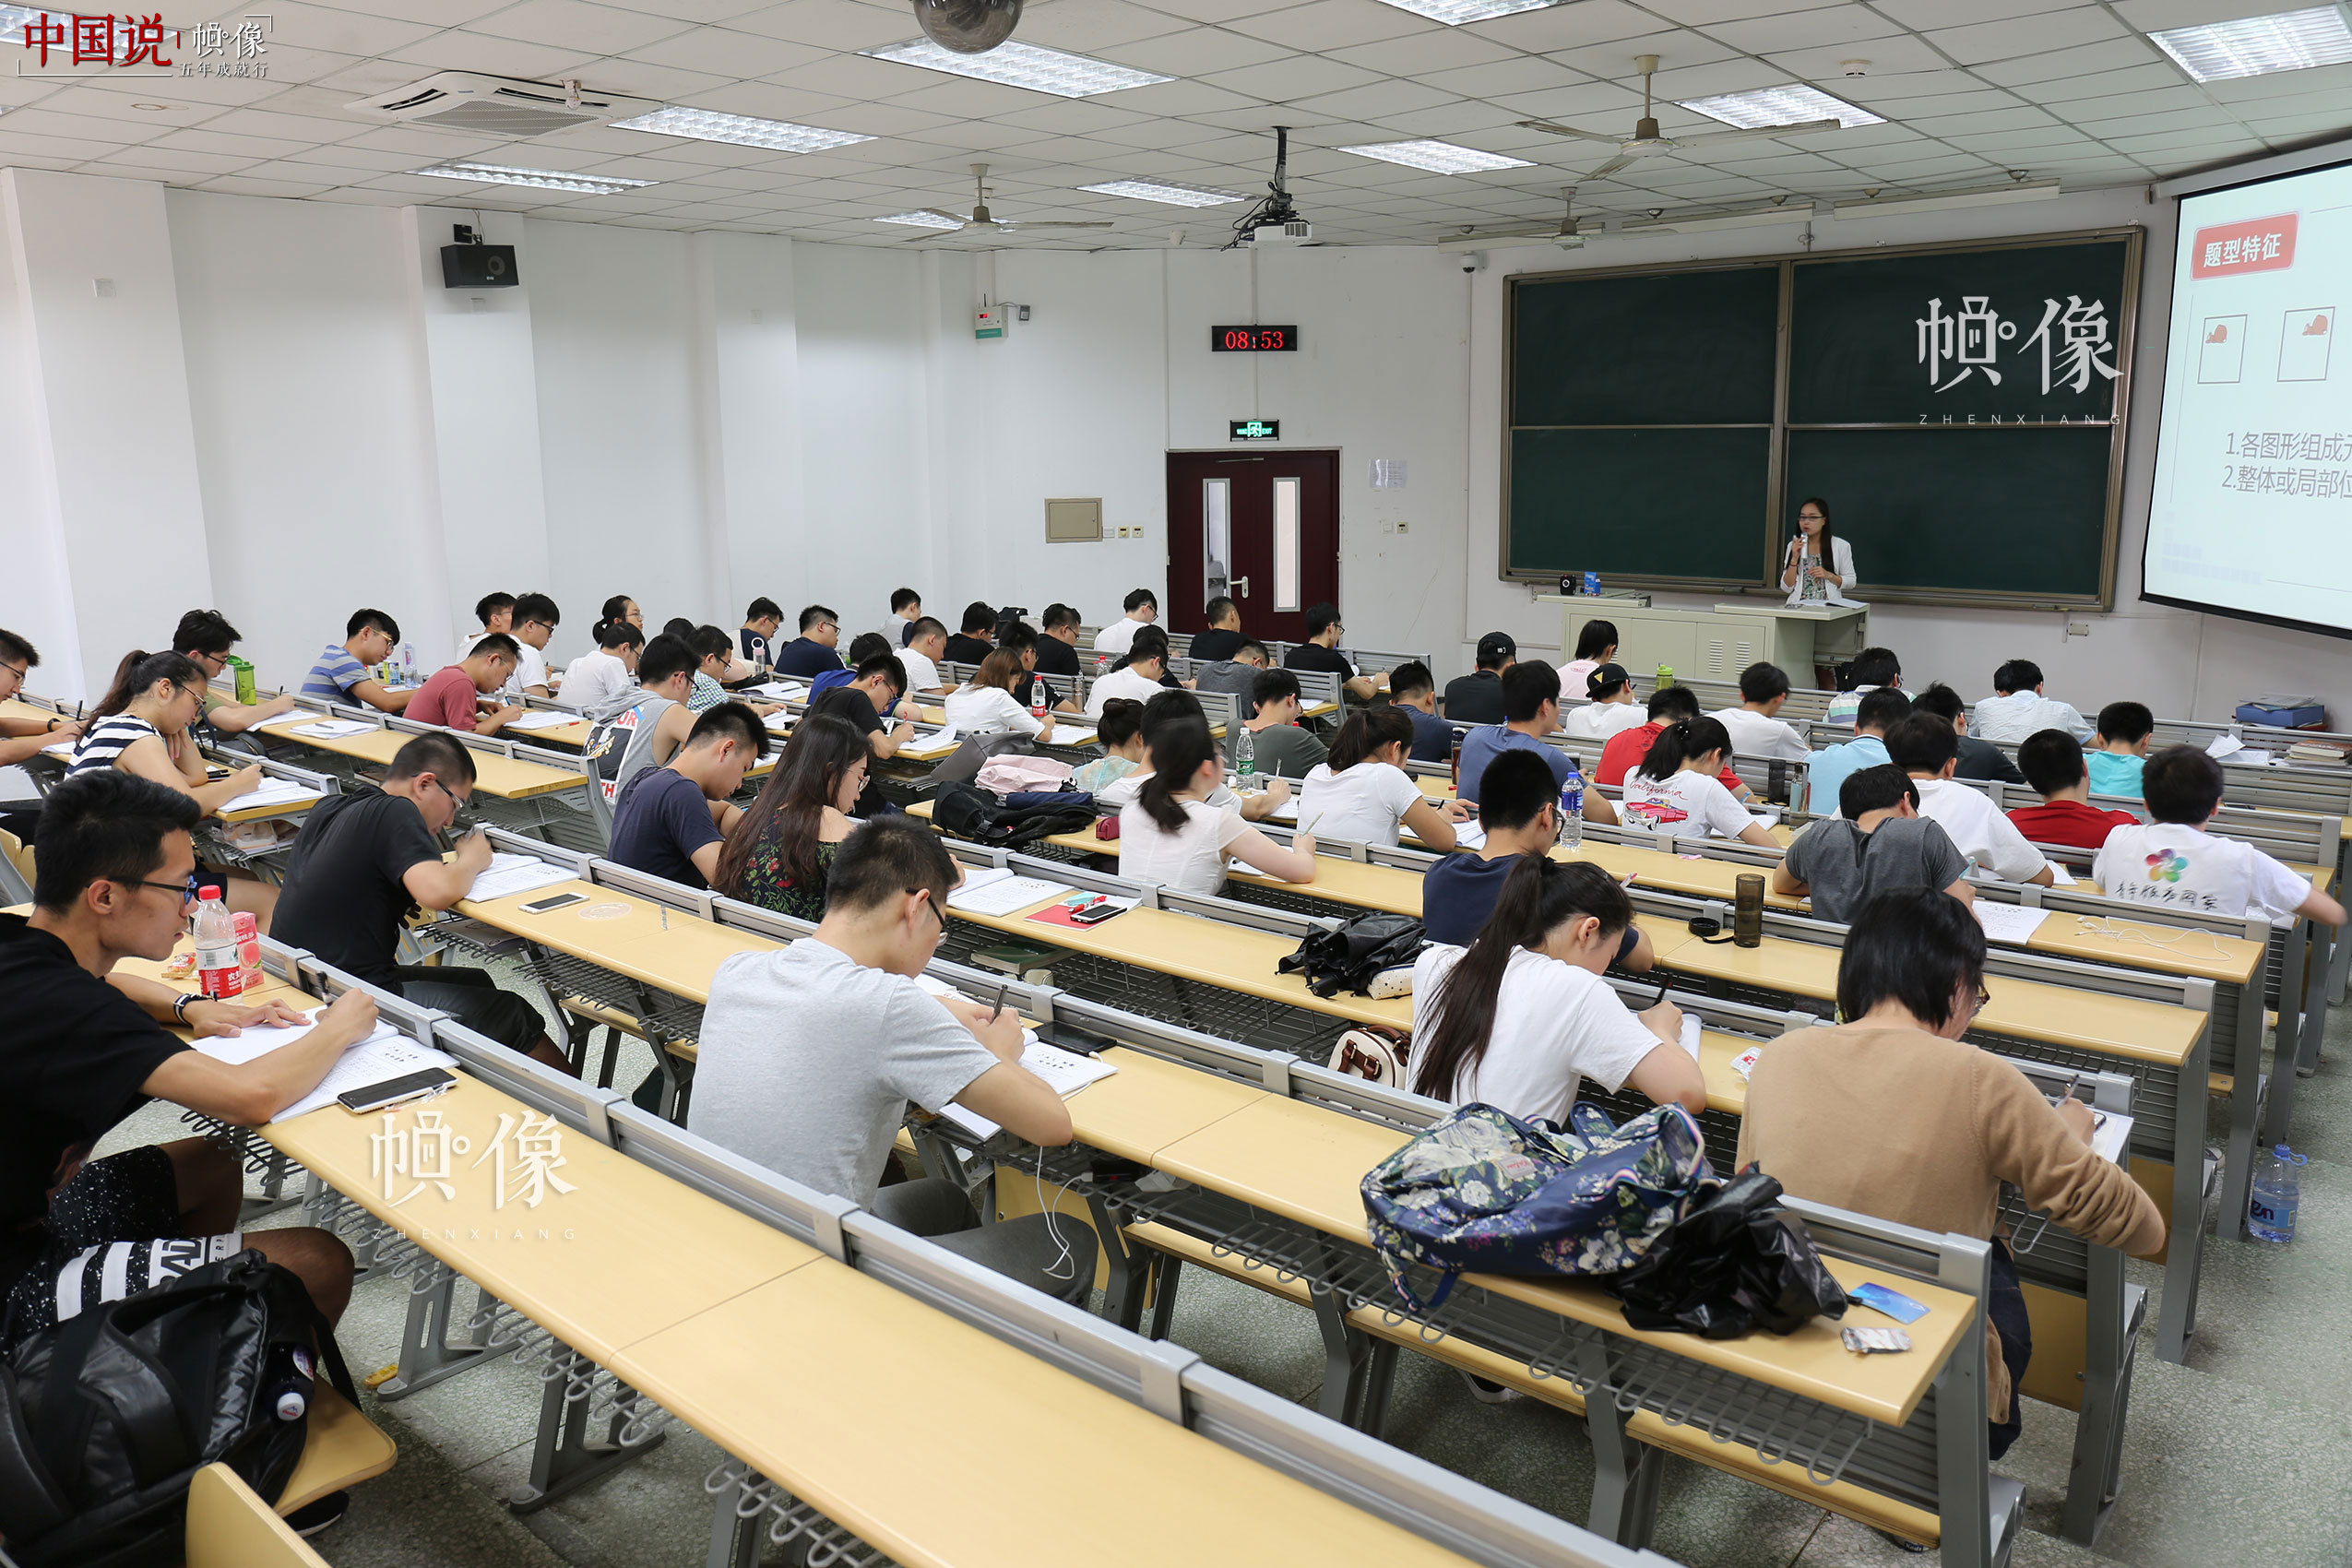 2017年7月10日，北京，参加华图教育培训的学生认真记录考试重点。中国网记者 王梦泽 摄 